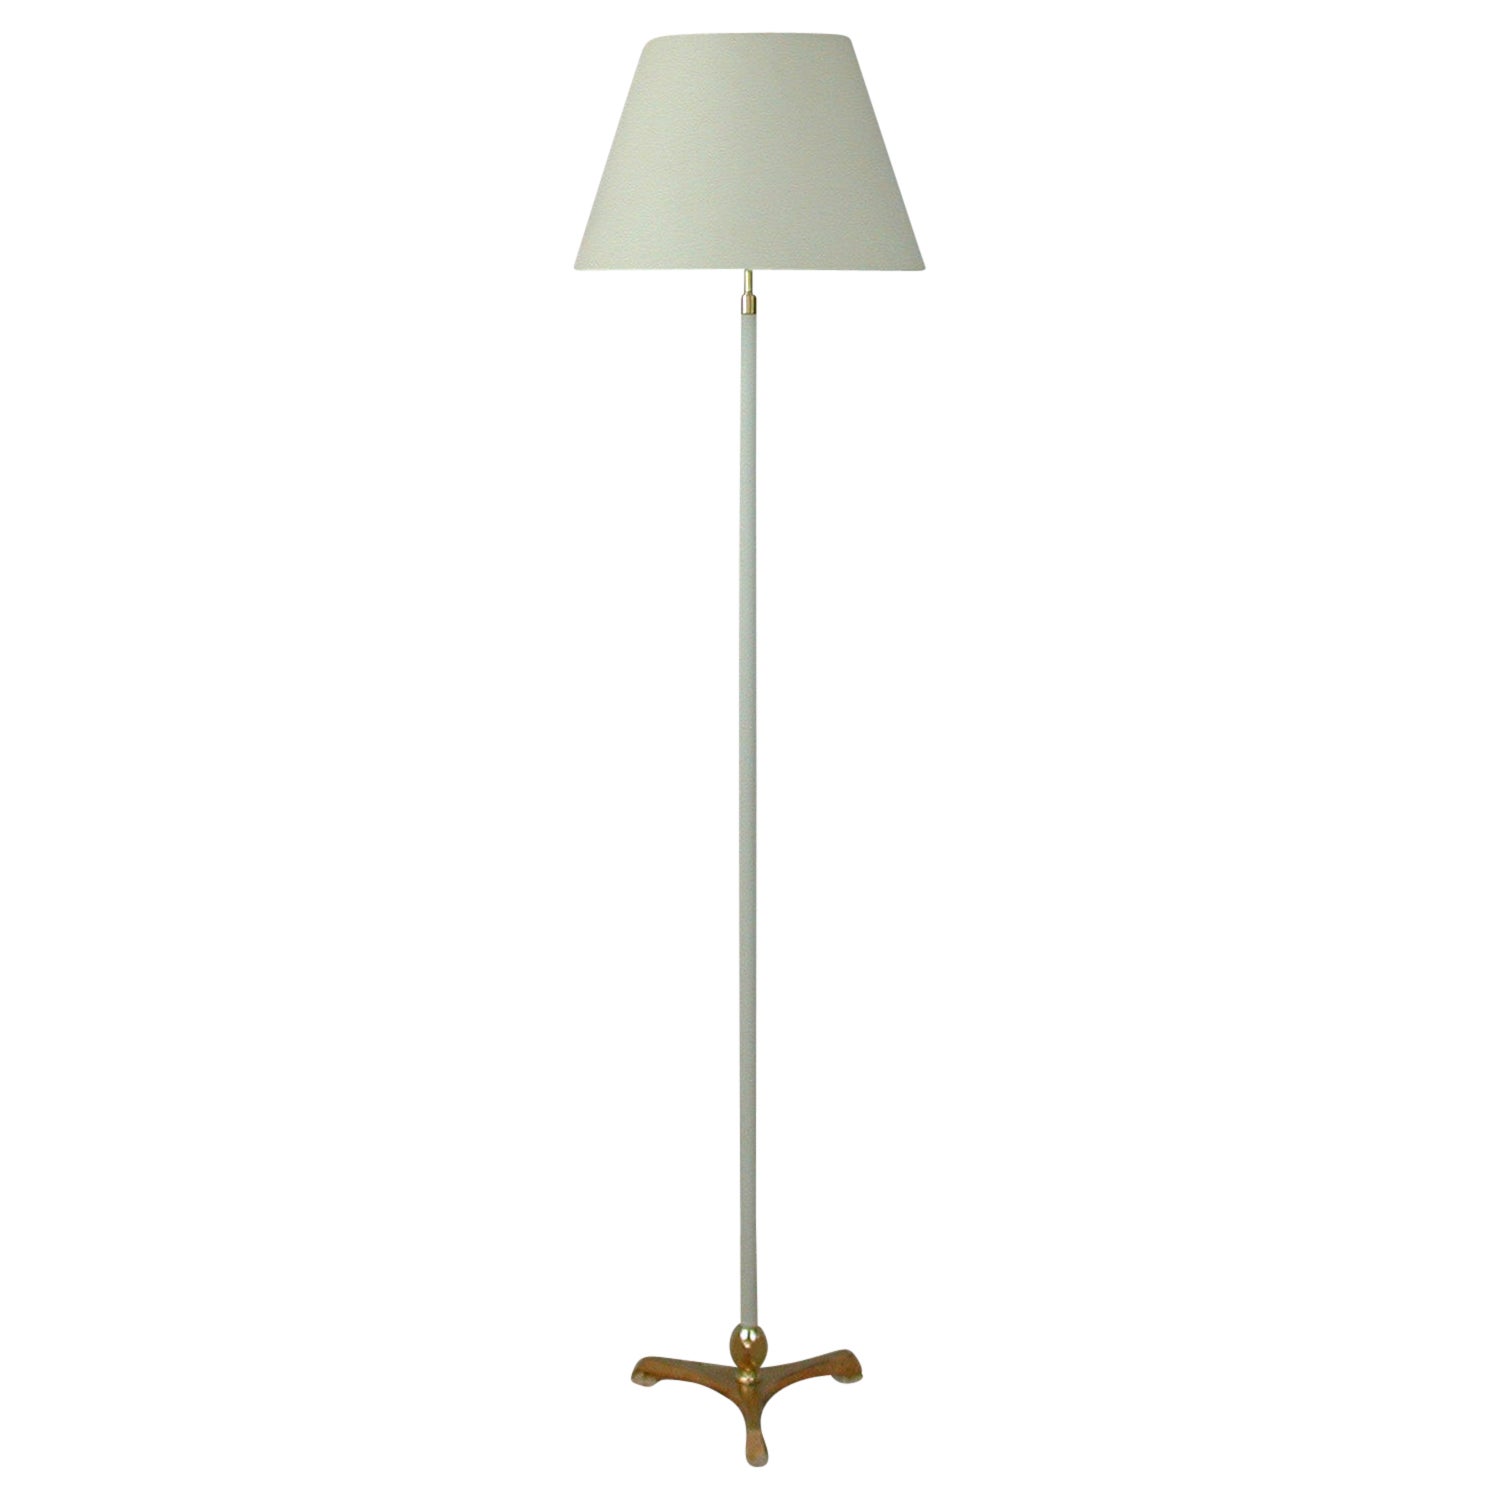 Midcentury White Leather and Brass Floor Lamp by Vereinigte Werkstätten, 1950s For Sale